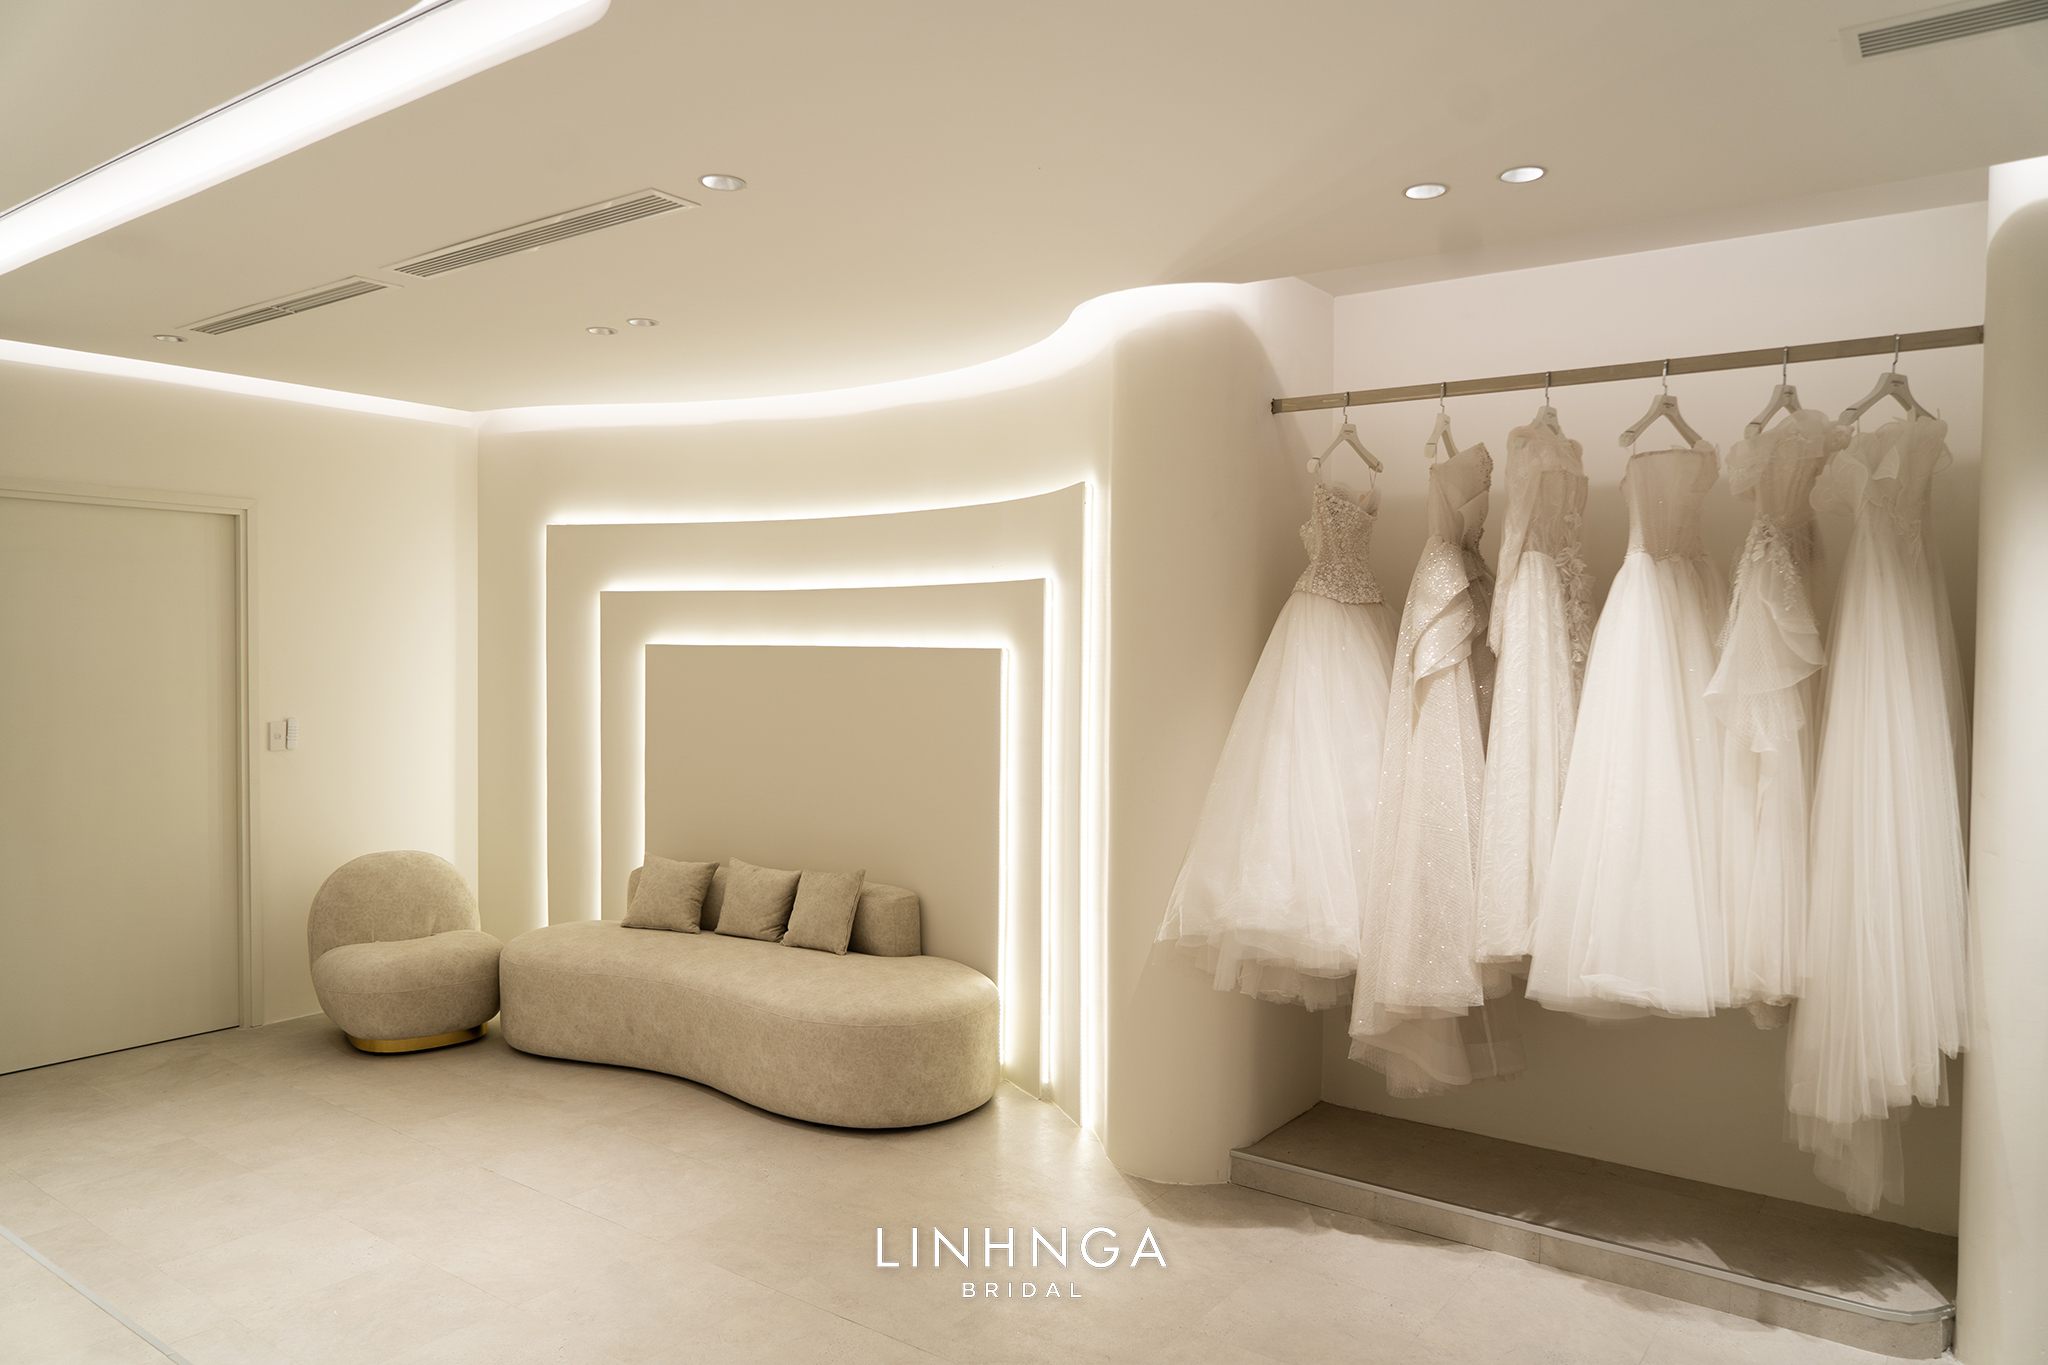 Tại showroom Linh Nga Bridal HCM, nàng có thể thỏa sức ướm thử nhiều chiếc váy cưới